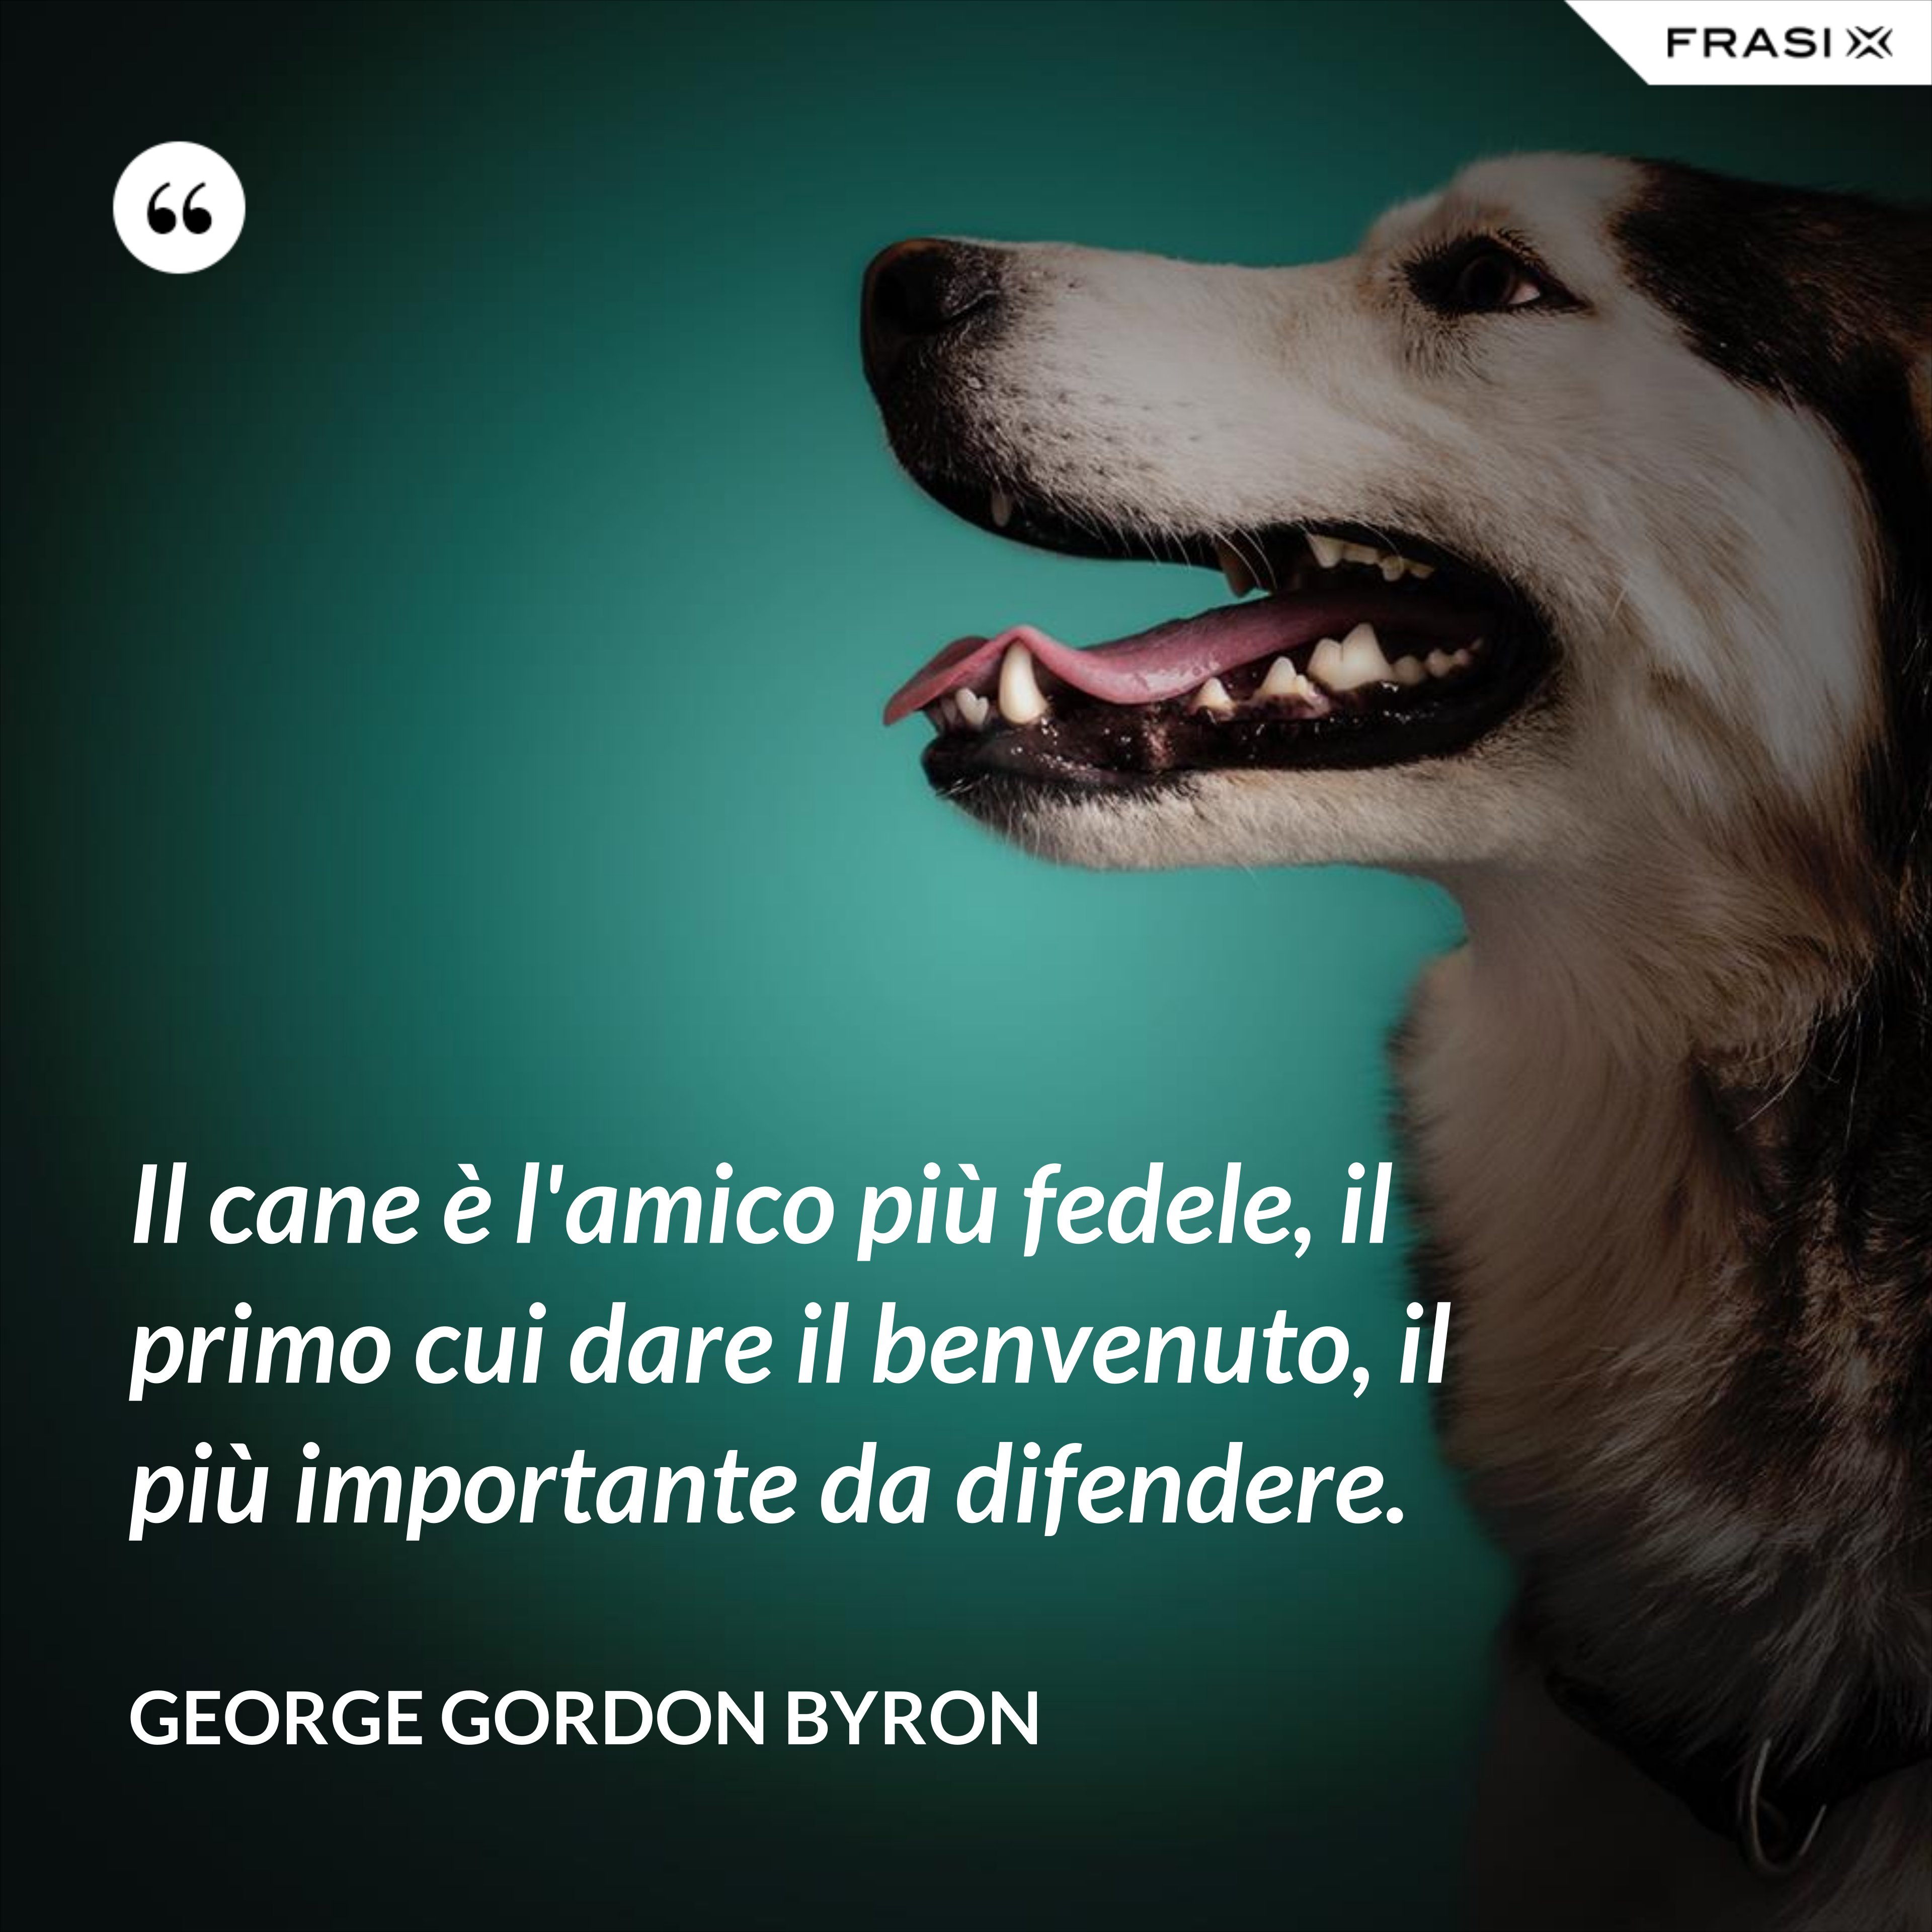 Il cane è l'amico più fedele, il primo cui dare il benvenuto, il più importante da difendere. - George Gordon Byron